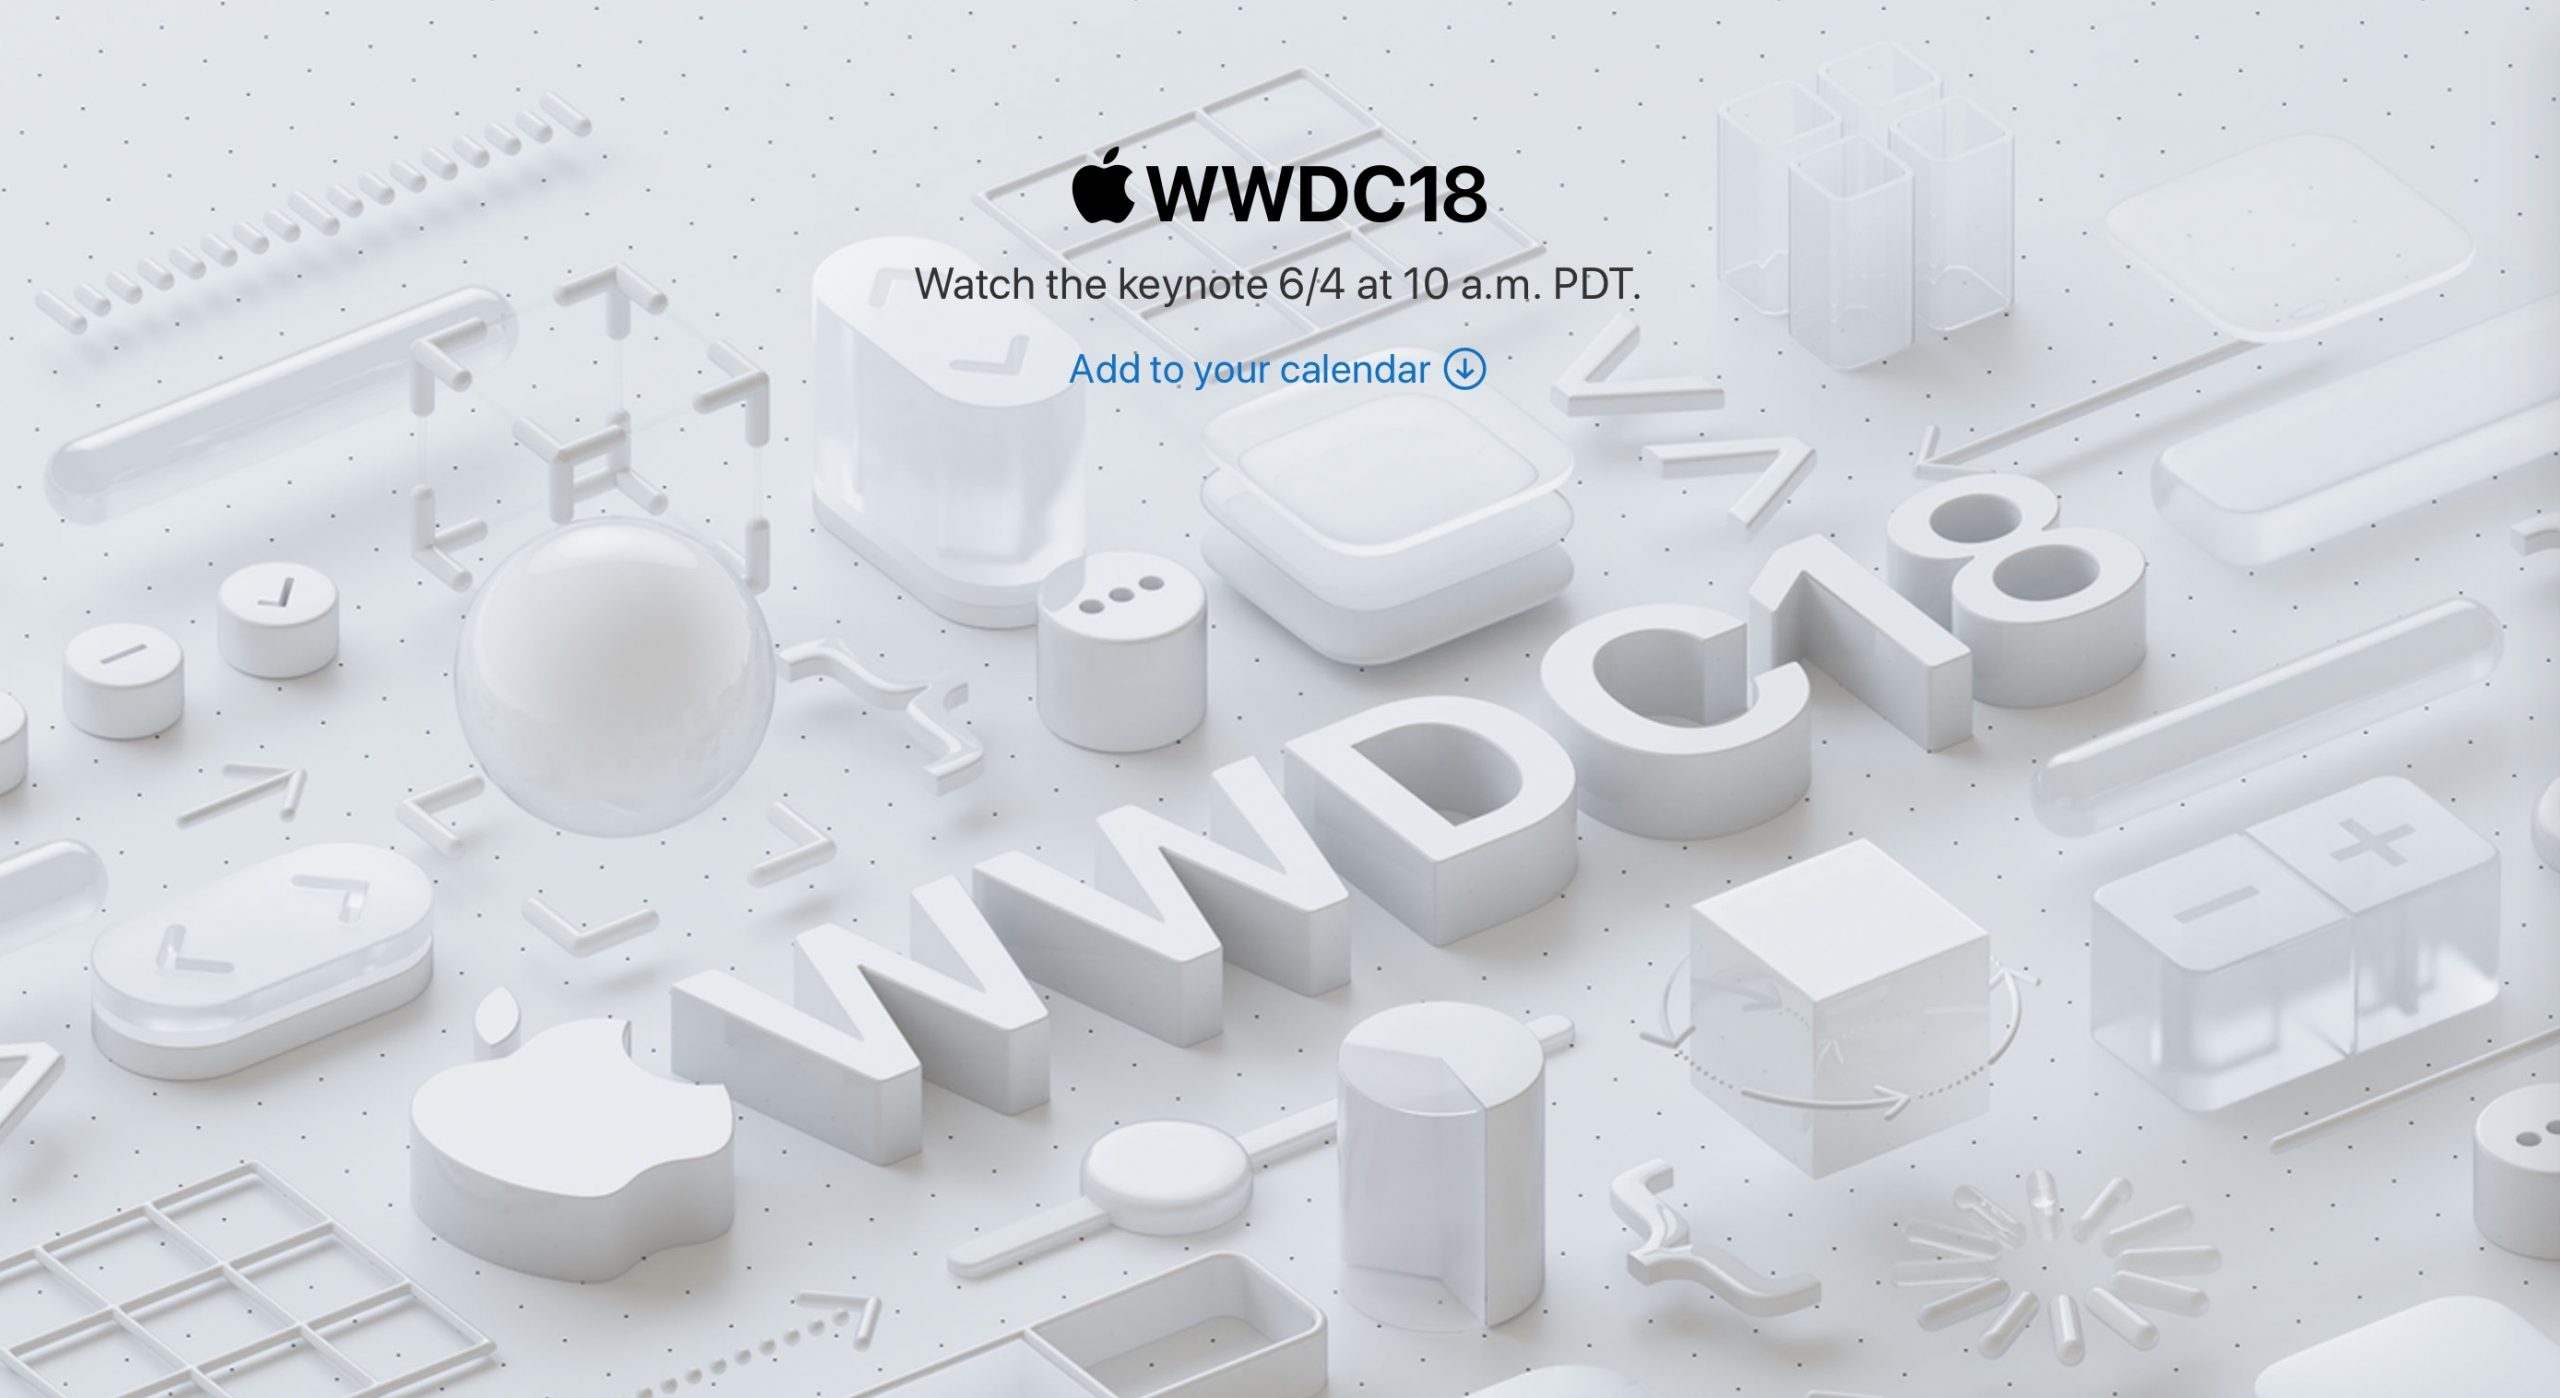 Hướng dẫn xem live sự kiện WWDC 2018 tối nay trên tất cả thiết bị